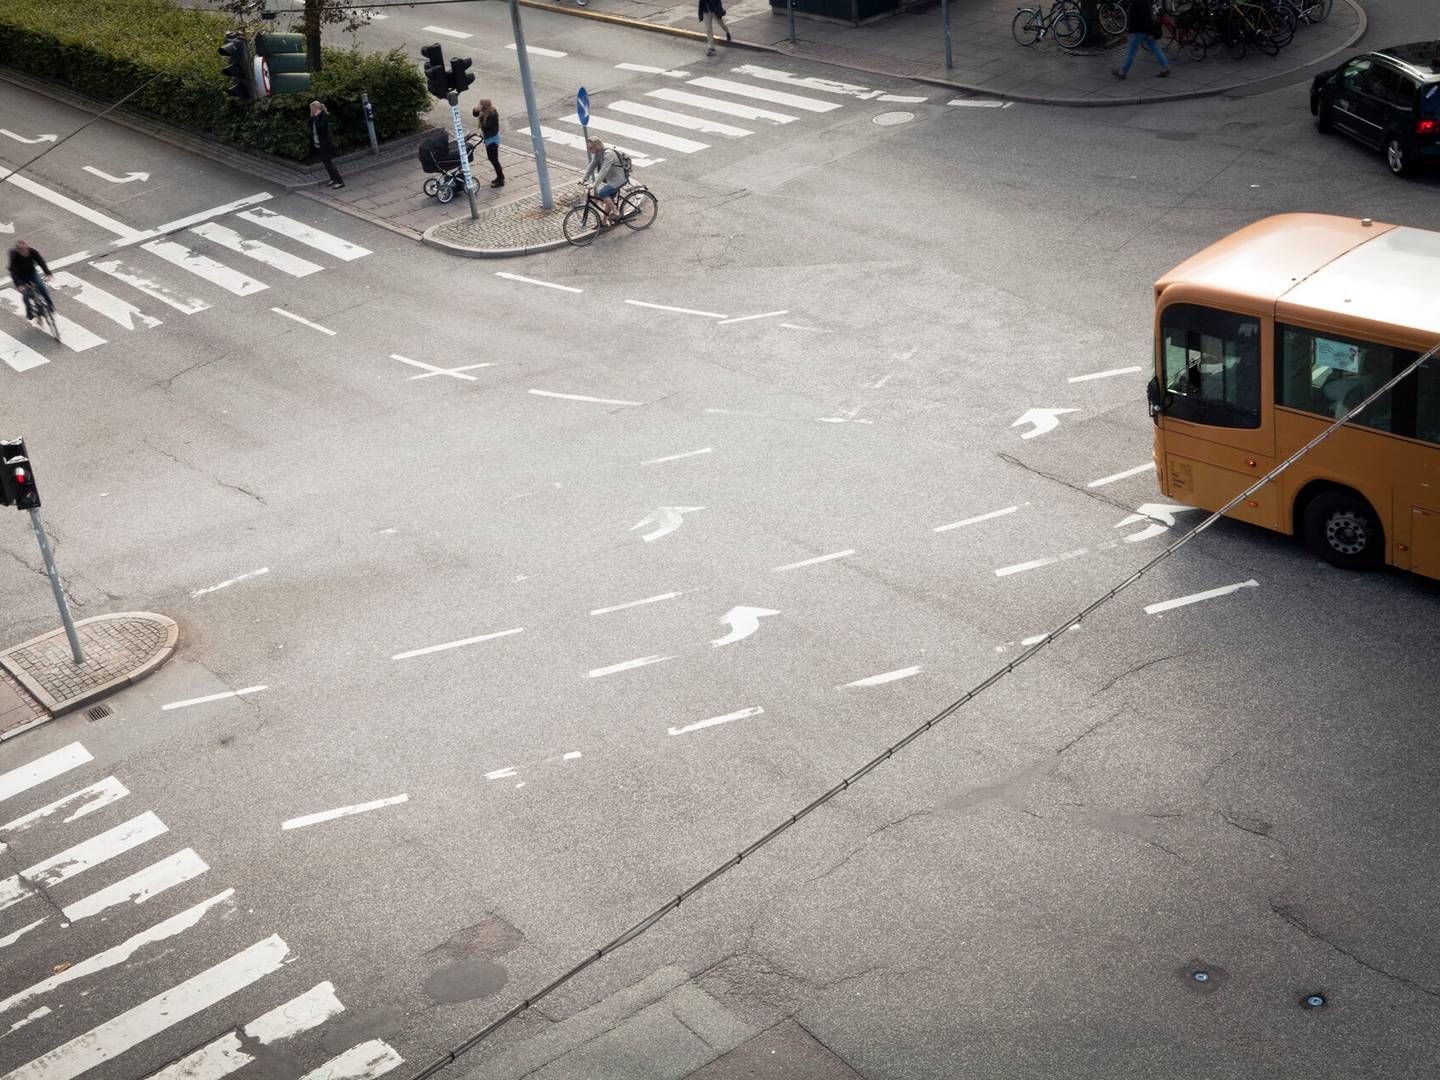 Det bliver ikke alle bybusser i Holstebro, der kommer til at lukke, lyder det fra borgmester H.C. Østerby (S). | Foto: Ditte Lysgaard Holm/Ritzau Scanpix